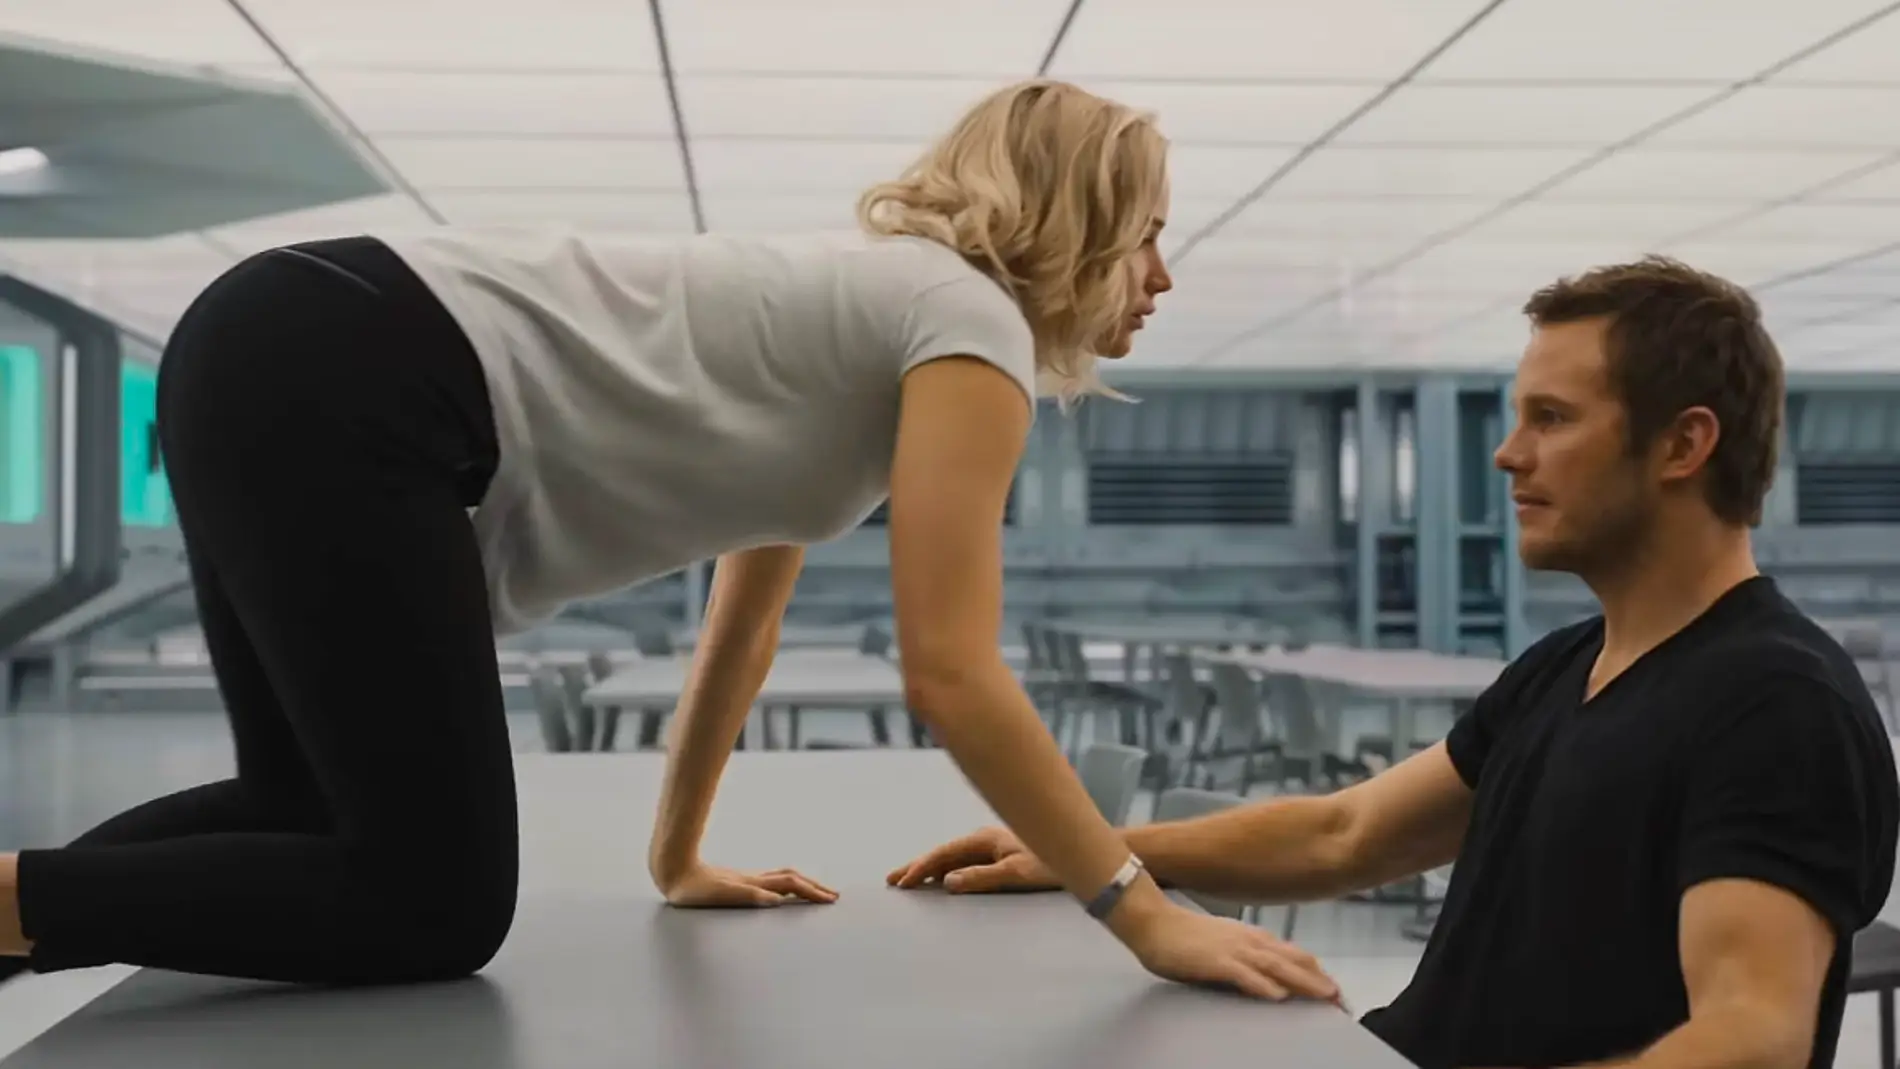 Jennifer Lawrence y Chris Pratt en 'Passengers'